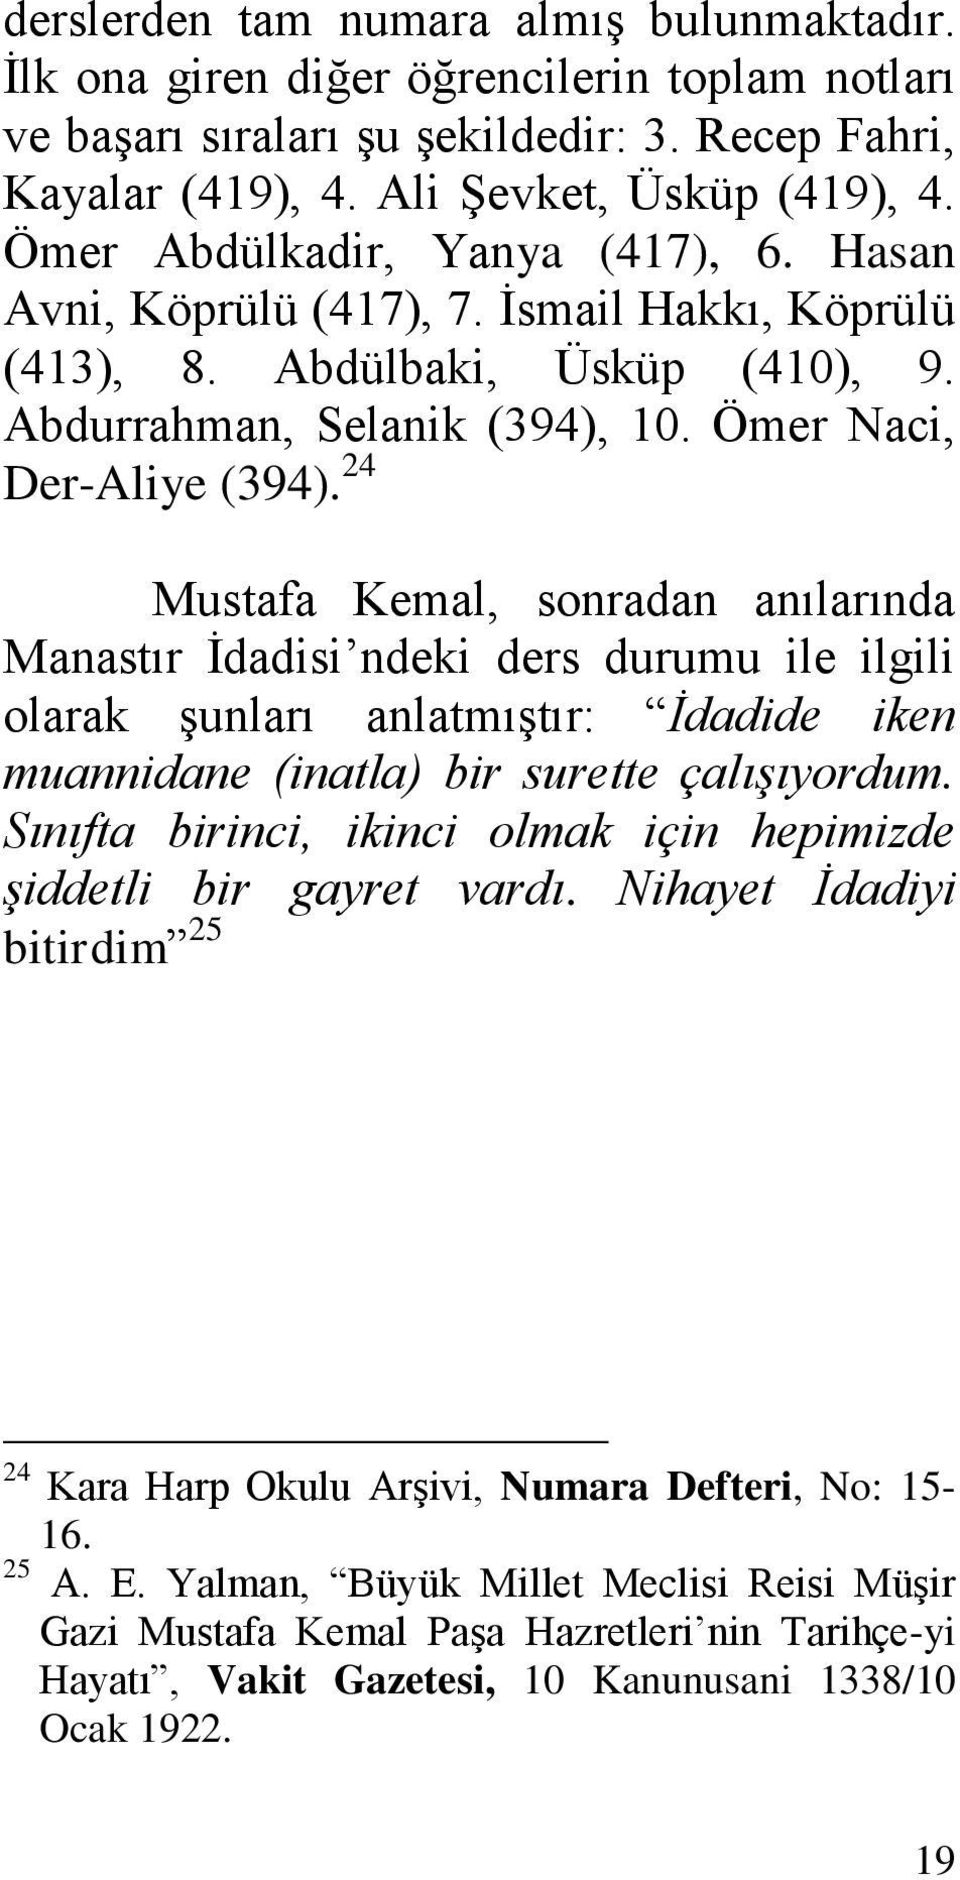 24 Mustafa Kemal, sonradan anılarında Manastır Ġdadisi ndeki ders durumu ile ilgili olarak Ģunları anlatmıģtır: İdadide iken muannidane (inatla) bir surette çalışıyordum.